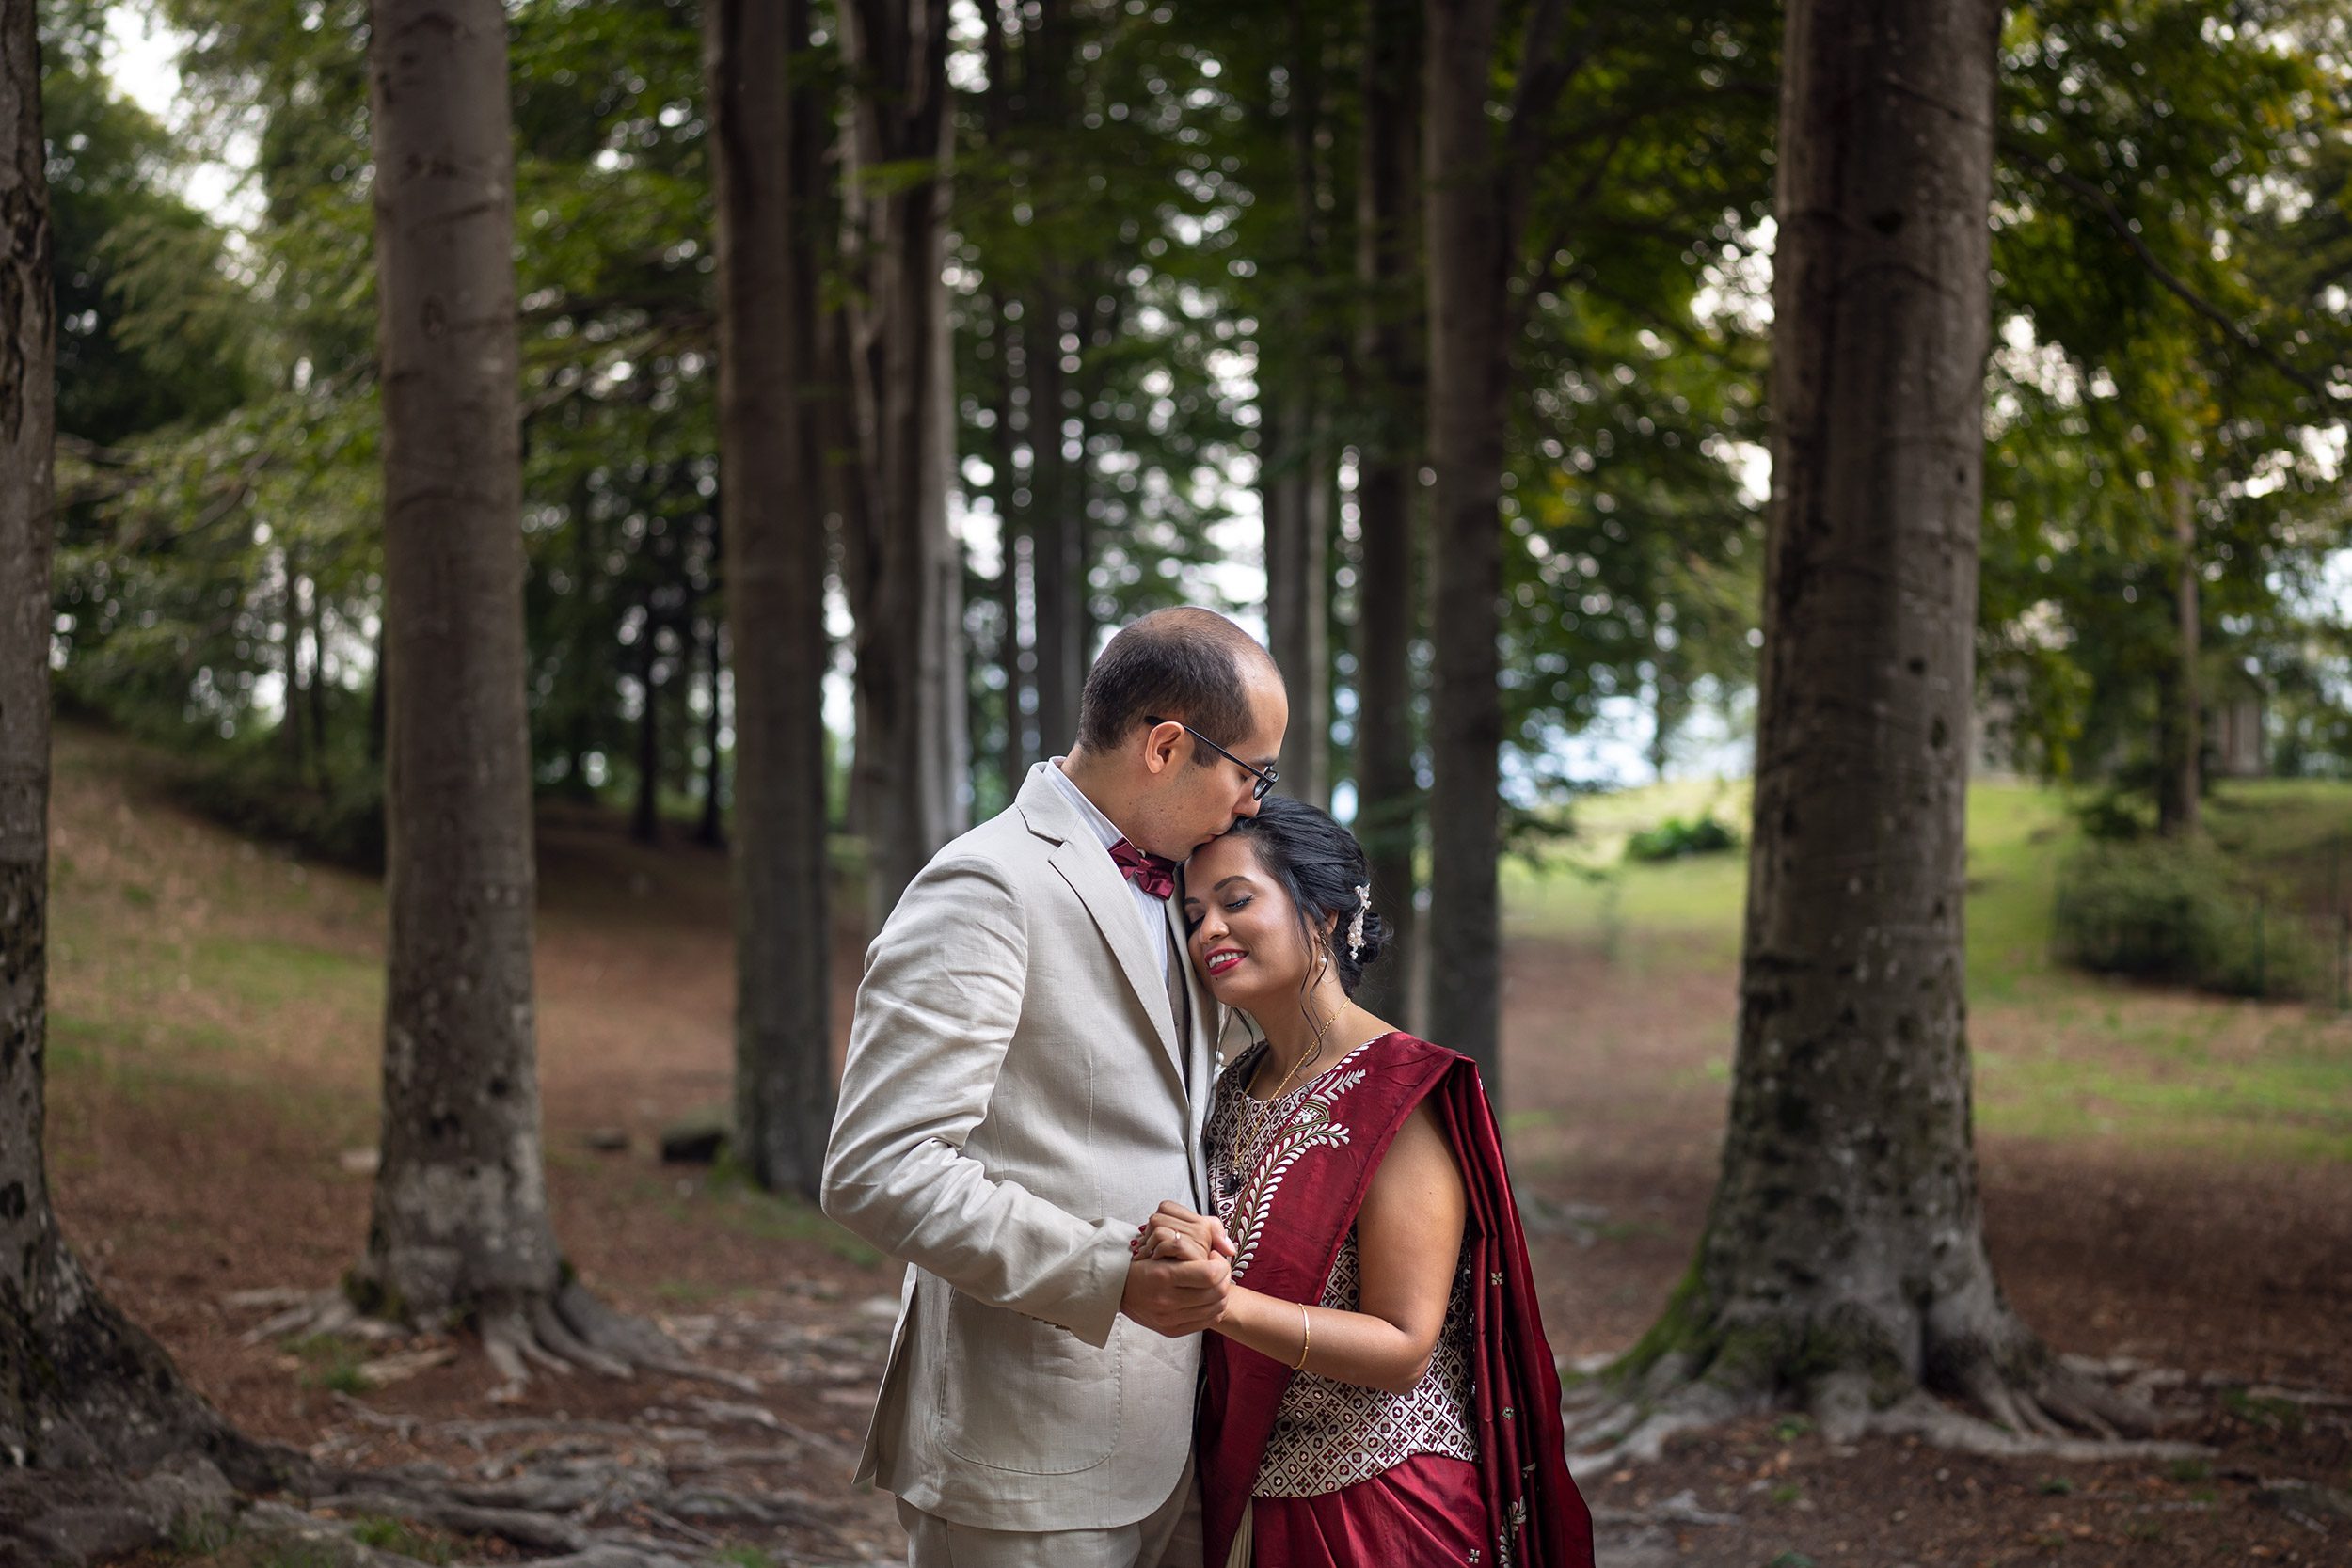 000 fotografo matrimonio reportage wedding sposi romantico bacio bosco ritratto villa pietraluna bellagio como 1